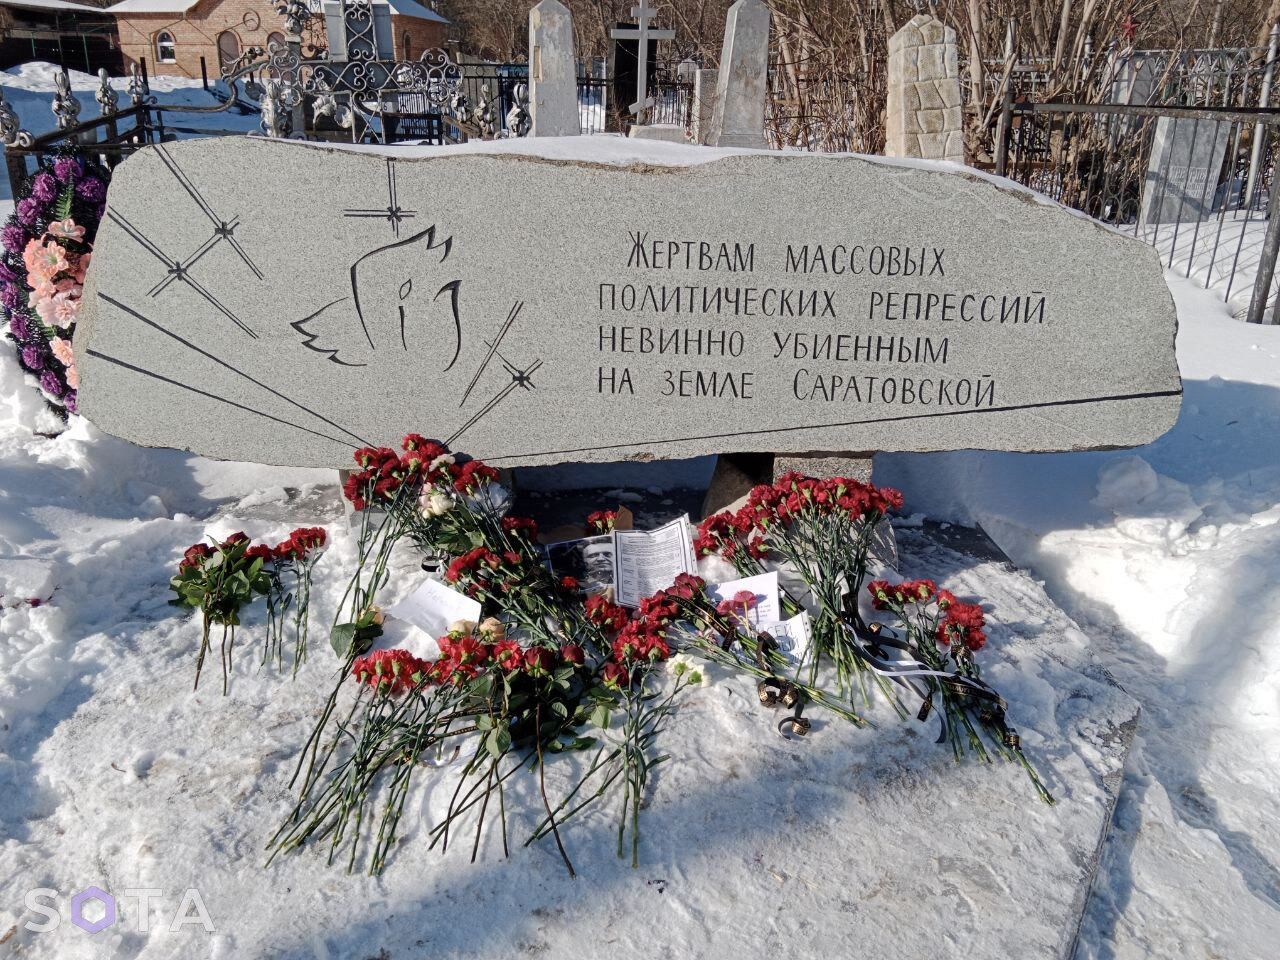 Соратники Навального підтвердили його смерть: у Росії почалися затримання учасників пам'ятних акцій. Фото і відео